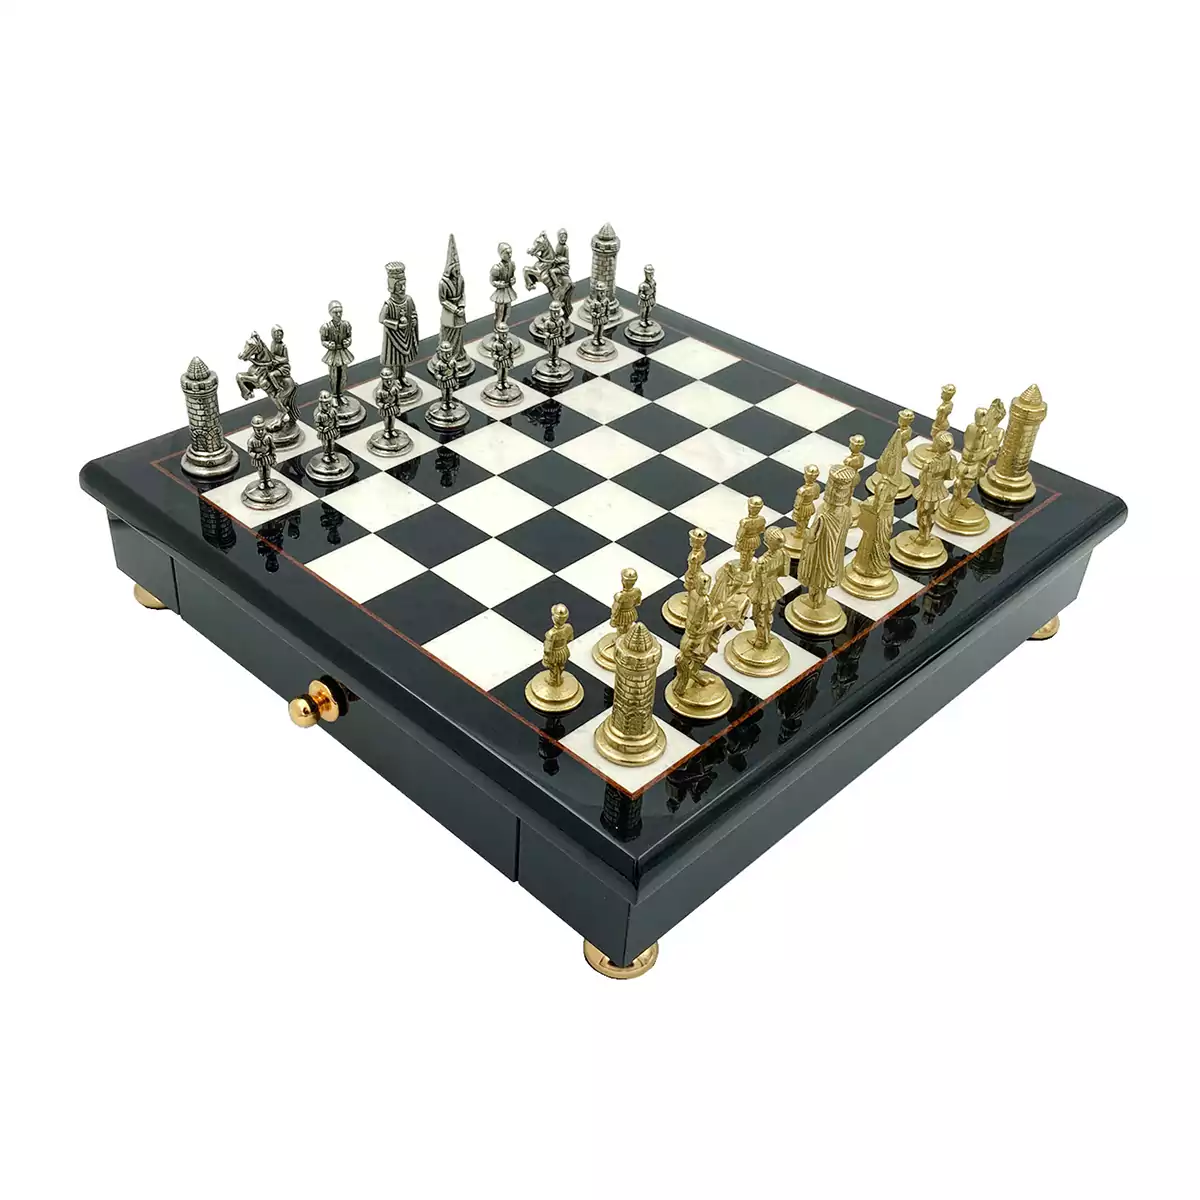 Chess "Piccolo" by Italfama